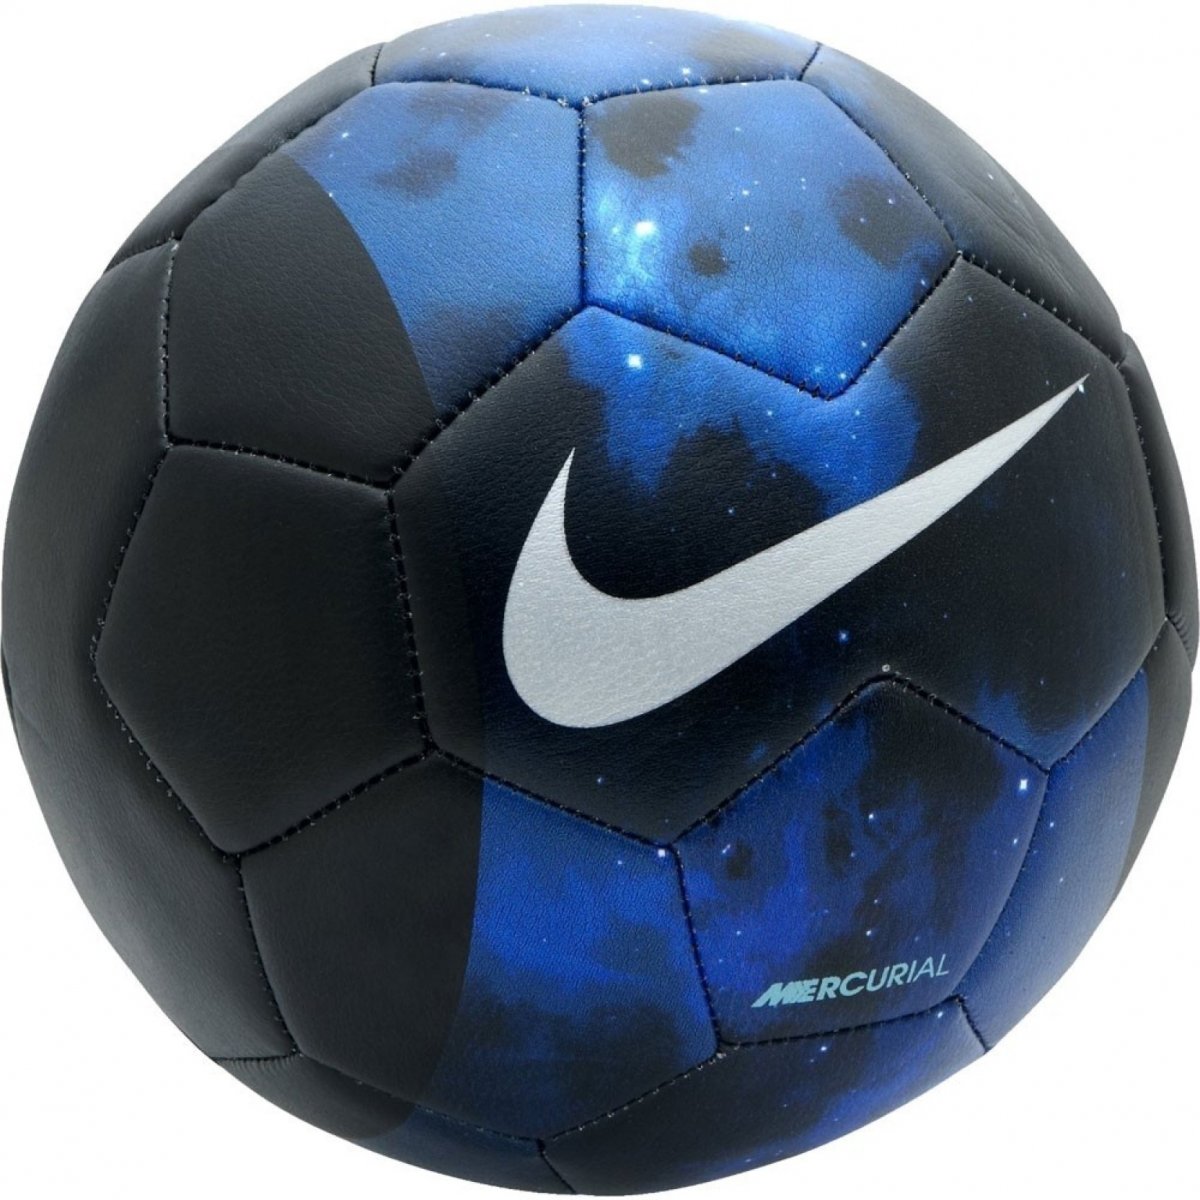 Мяч adidas Futsal